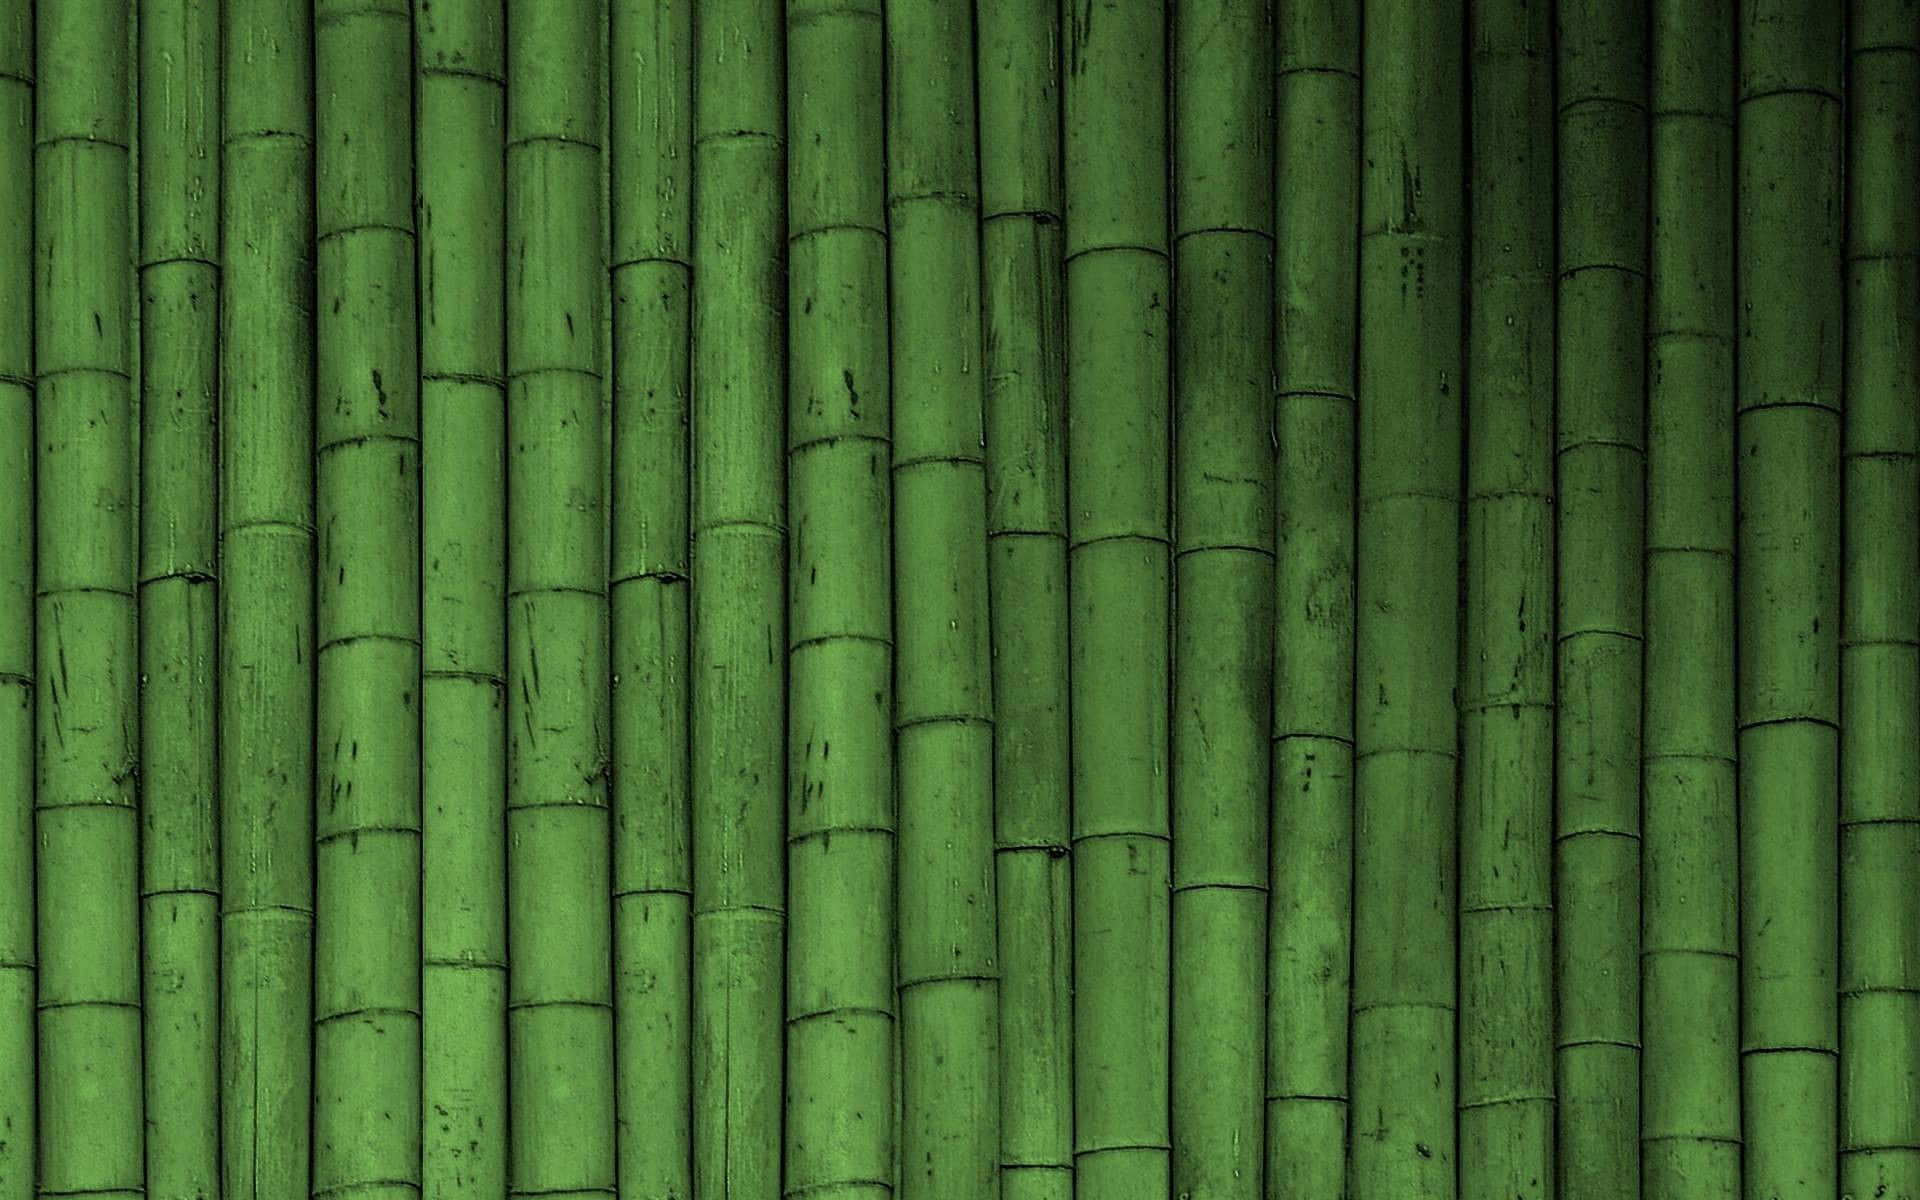 Enbild På En Lugn Grön Bambuskog. Wallpaper